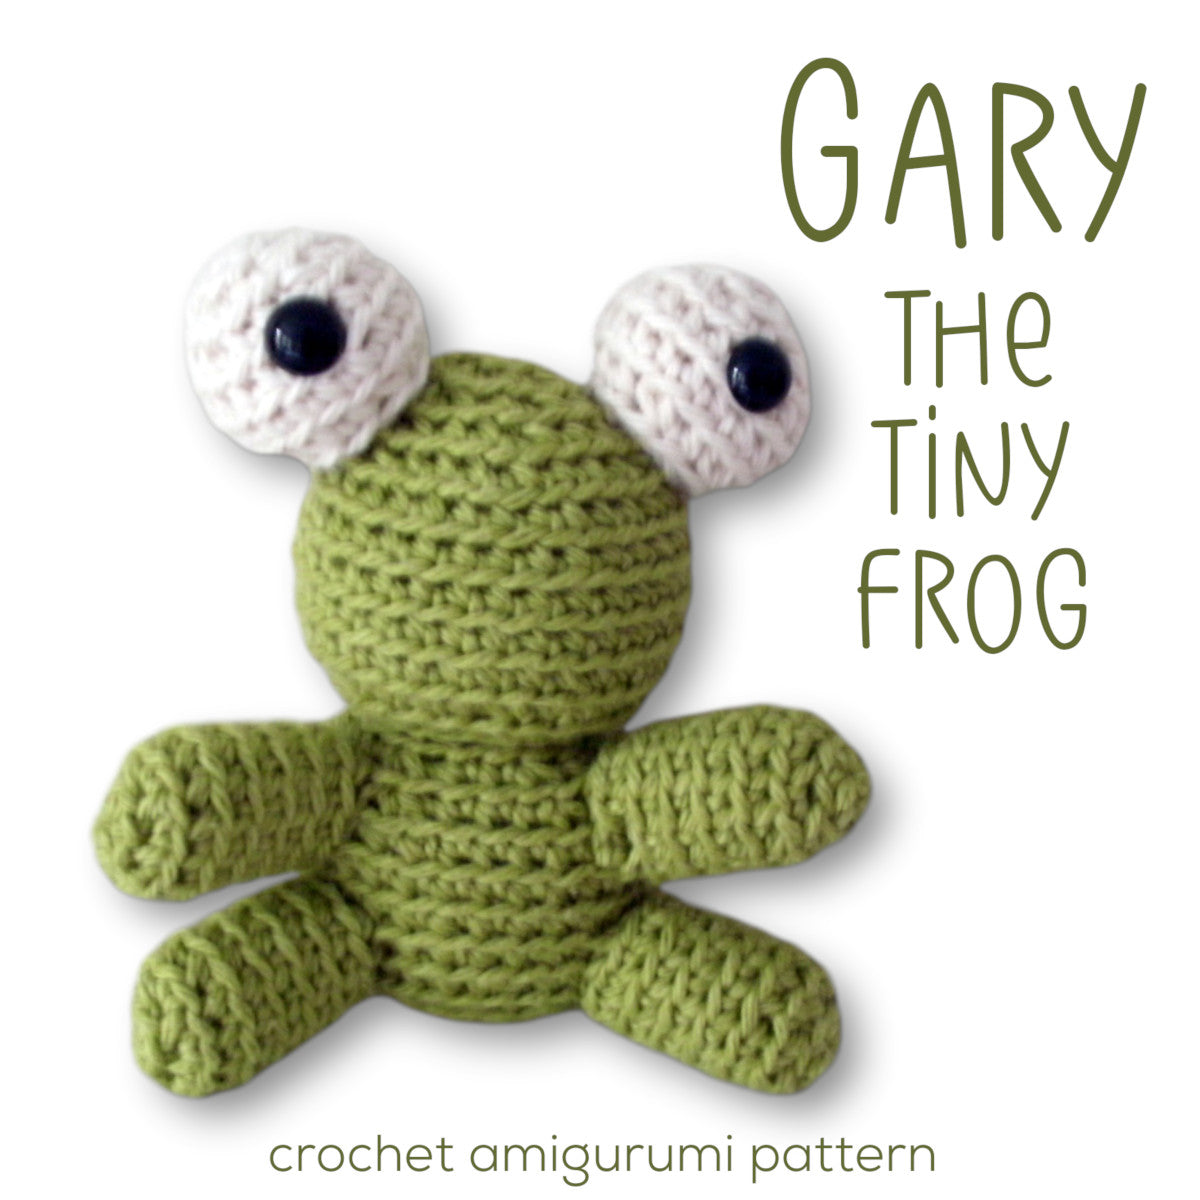 Gary the Tiny Frog Crochet Amigurumi Pattern